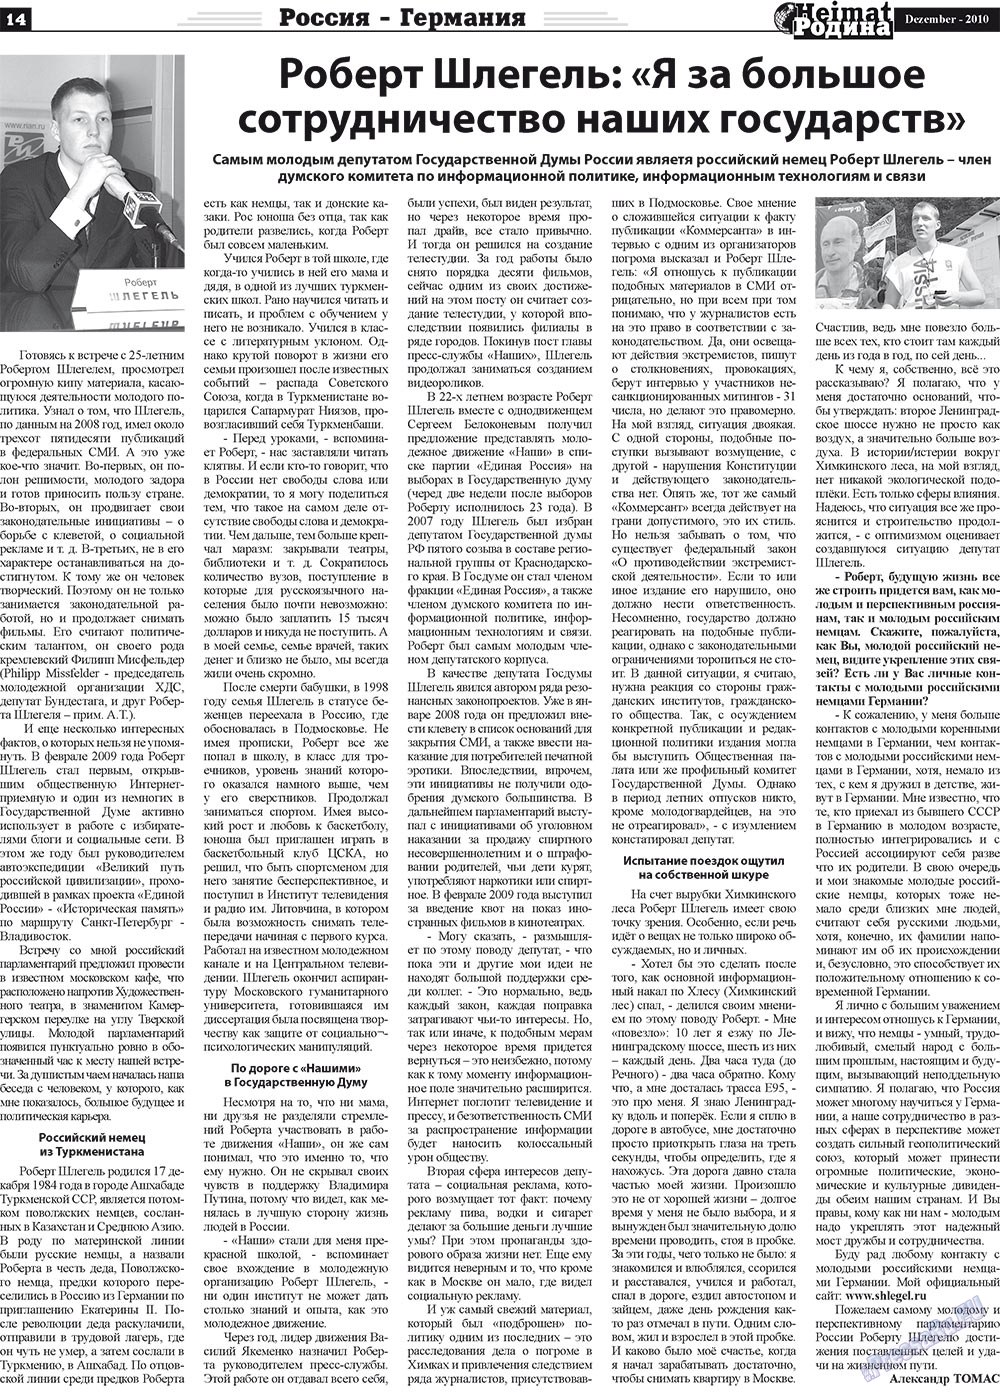 Heimat-Родина (газета). 2010 год, номер 12, стр. 14